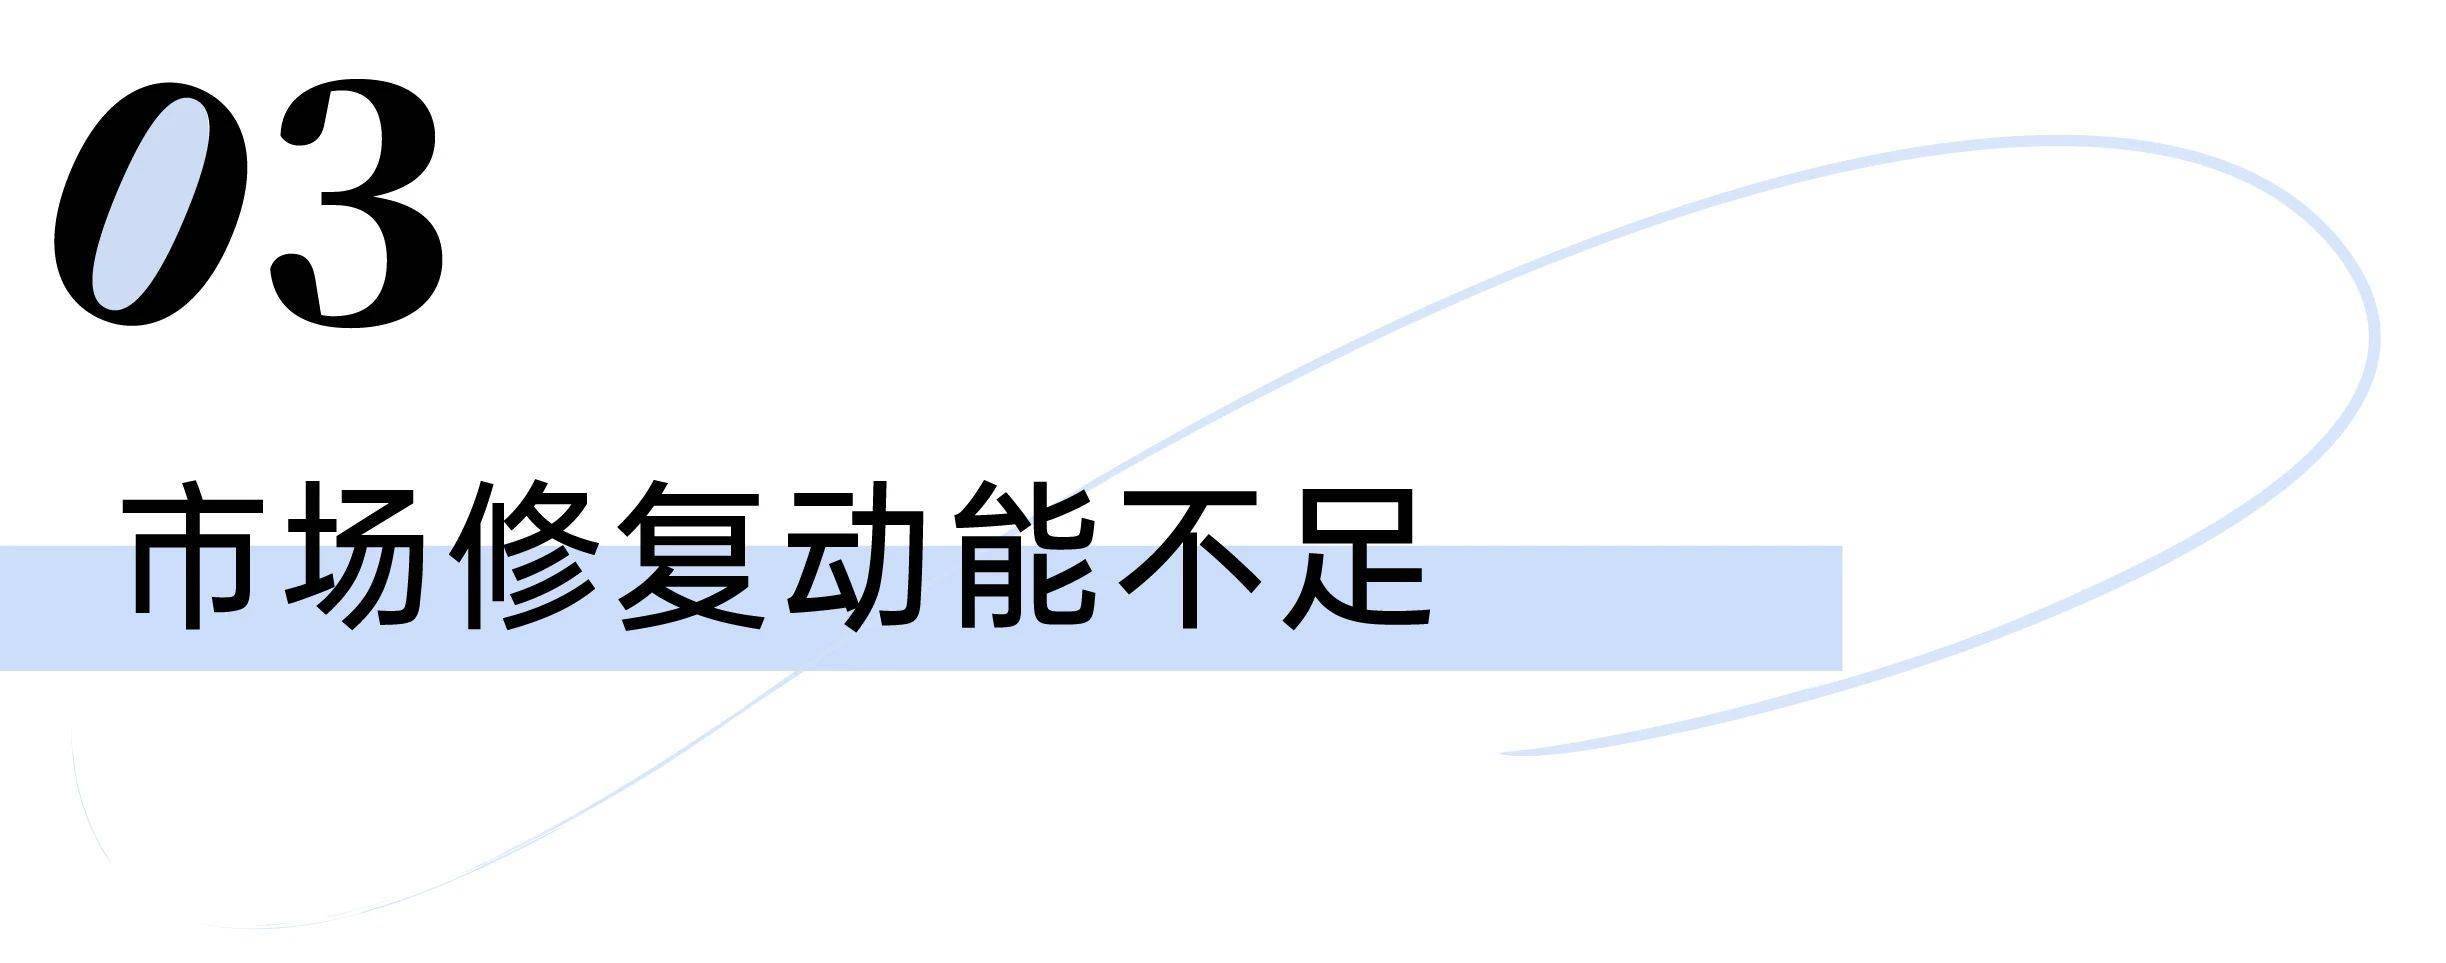 腾讯视频：澳门资料大全正版资料查询100-杭州二手房半年成交量首次超新房